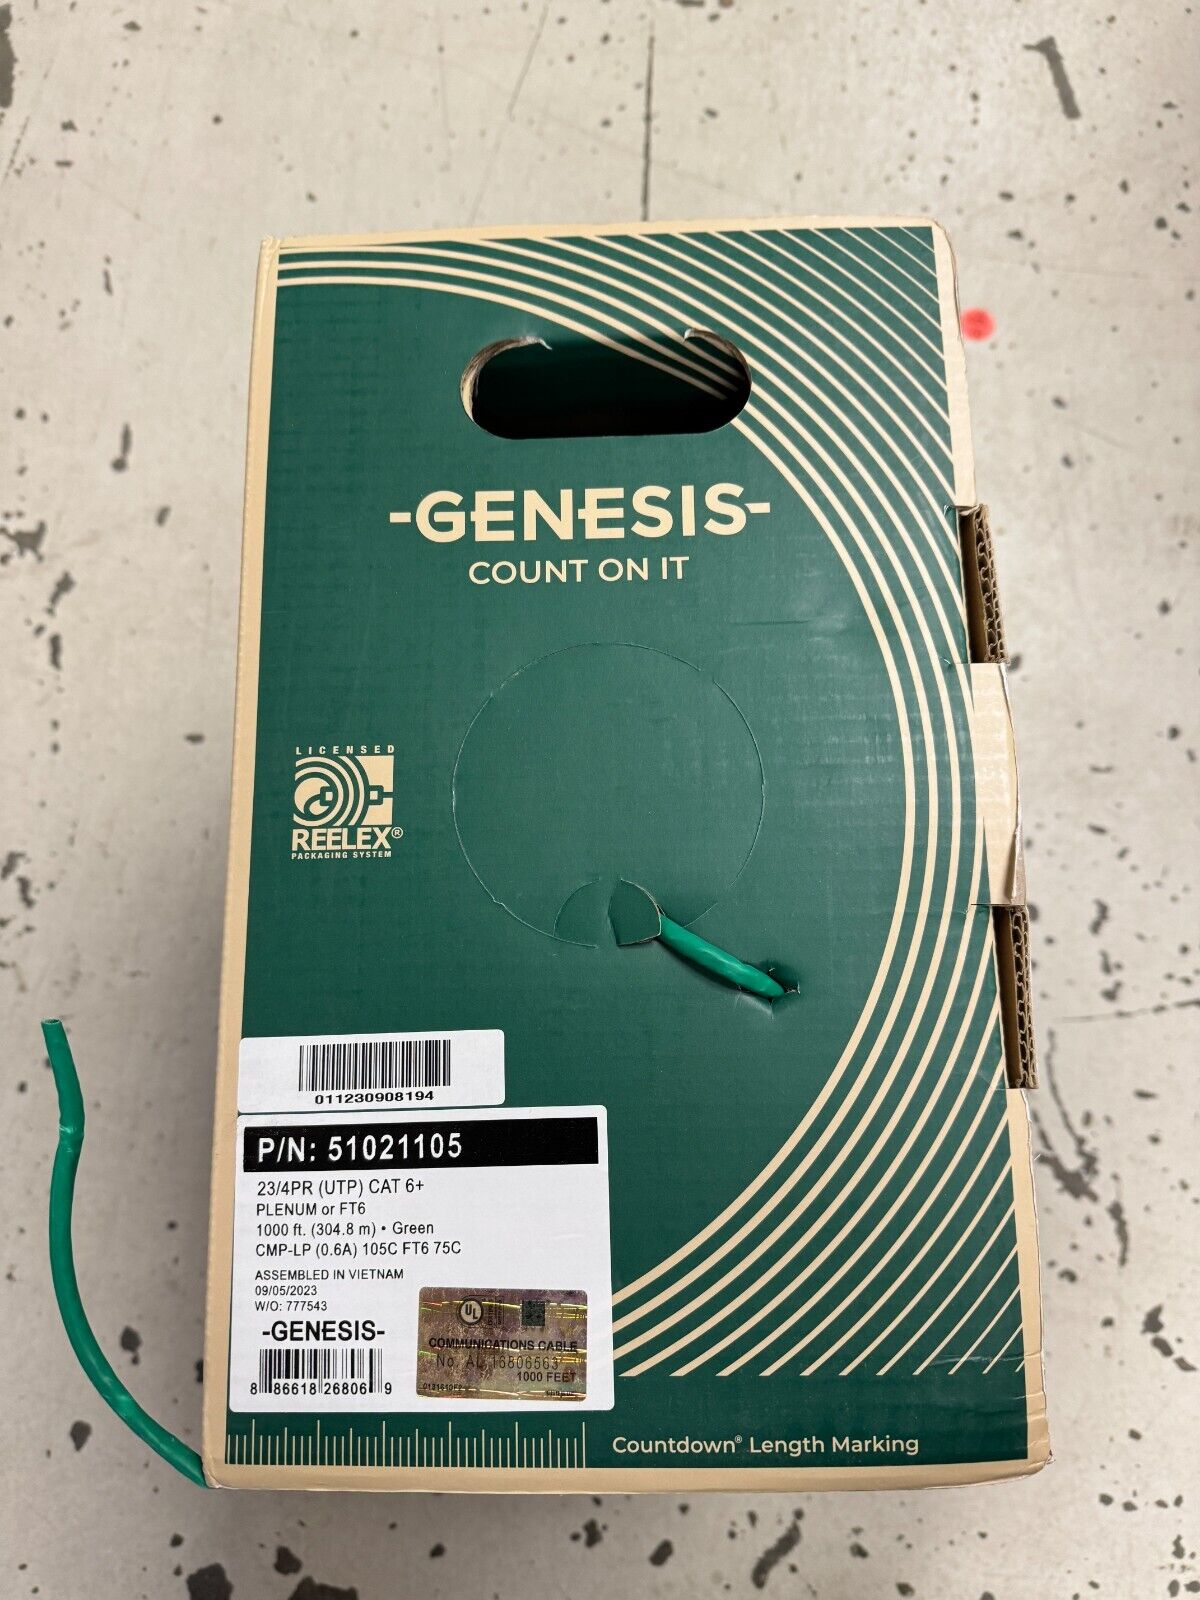 Genesis 51021105 23/4PR (UTP) CAT 6+ PLENUM FT6 1000ft (304.8 m) Green Pull Box